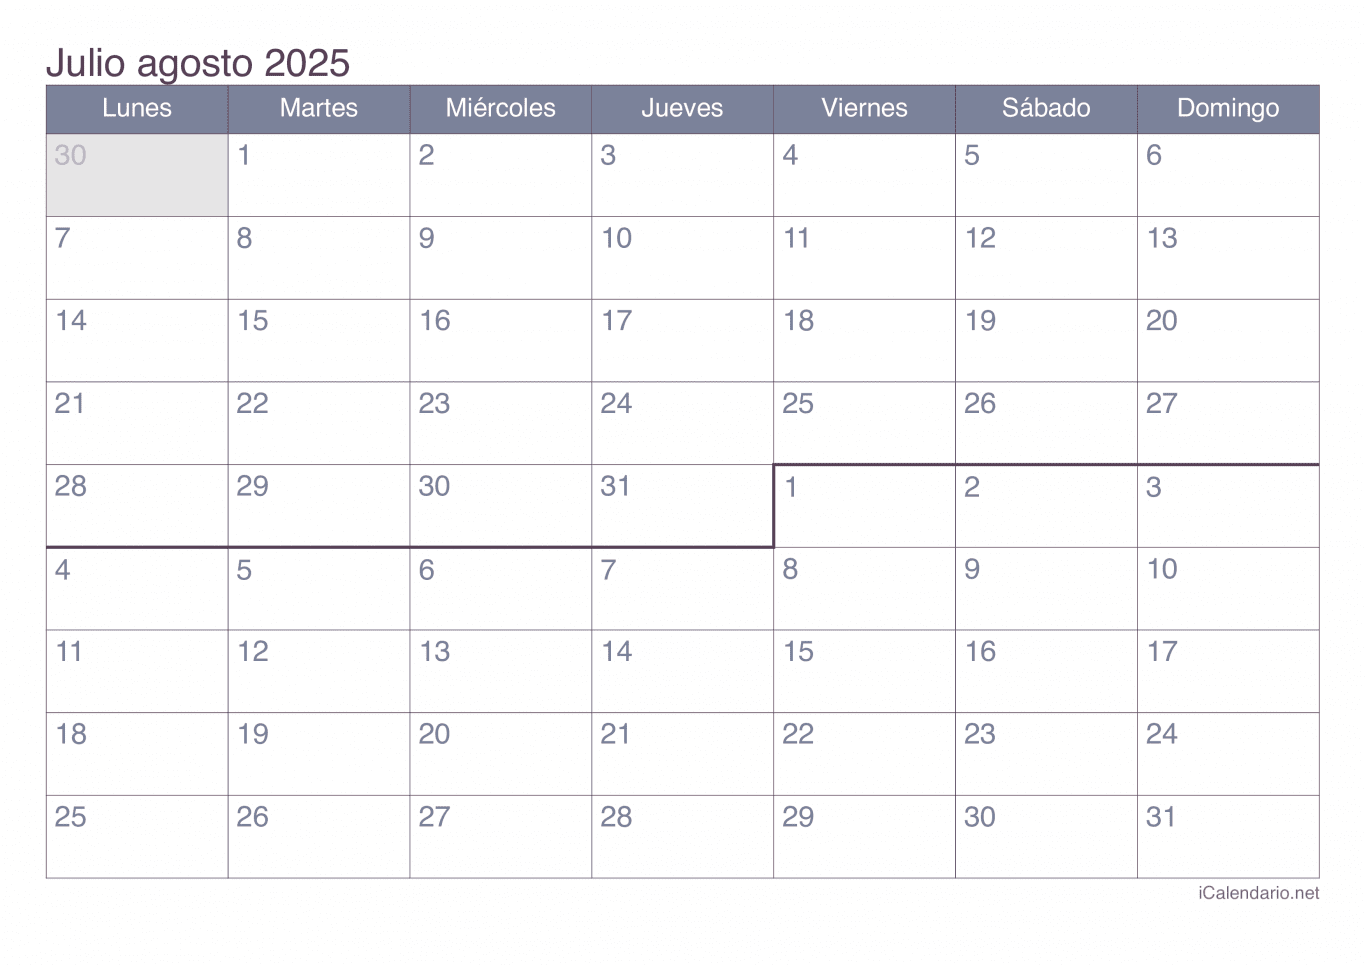 Calendario de julio agosto 2025 - Office